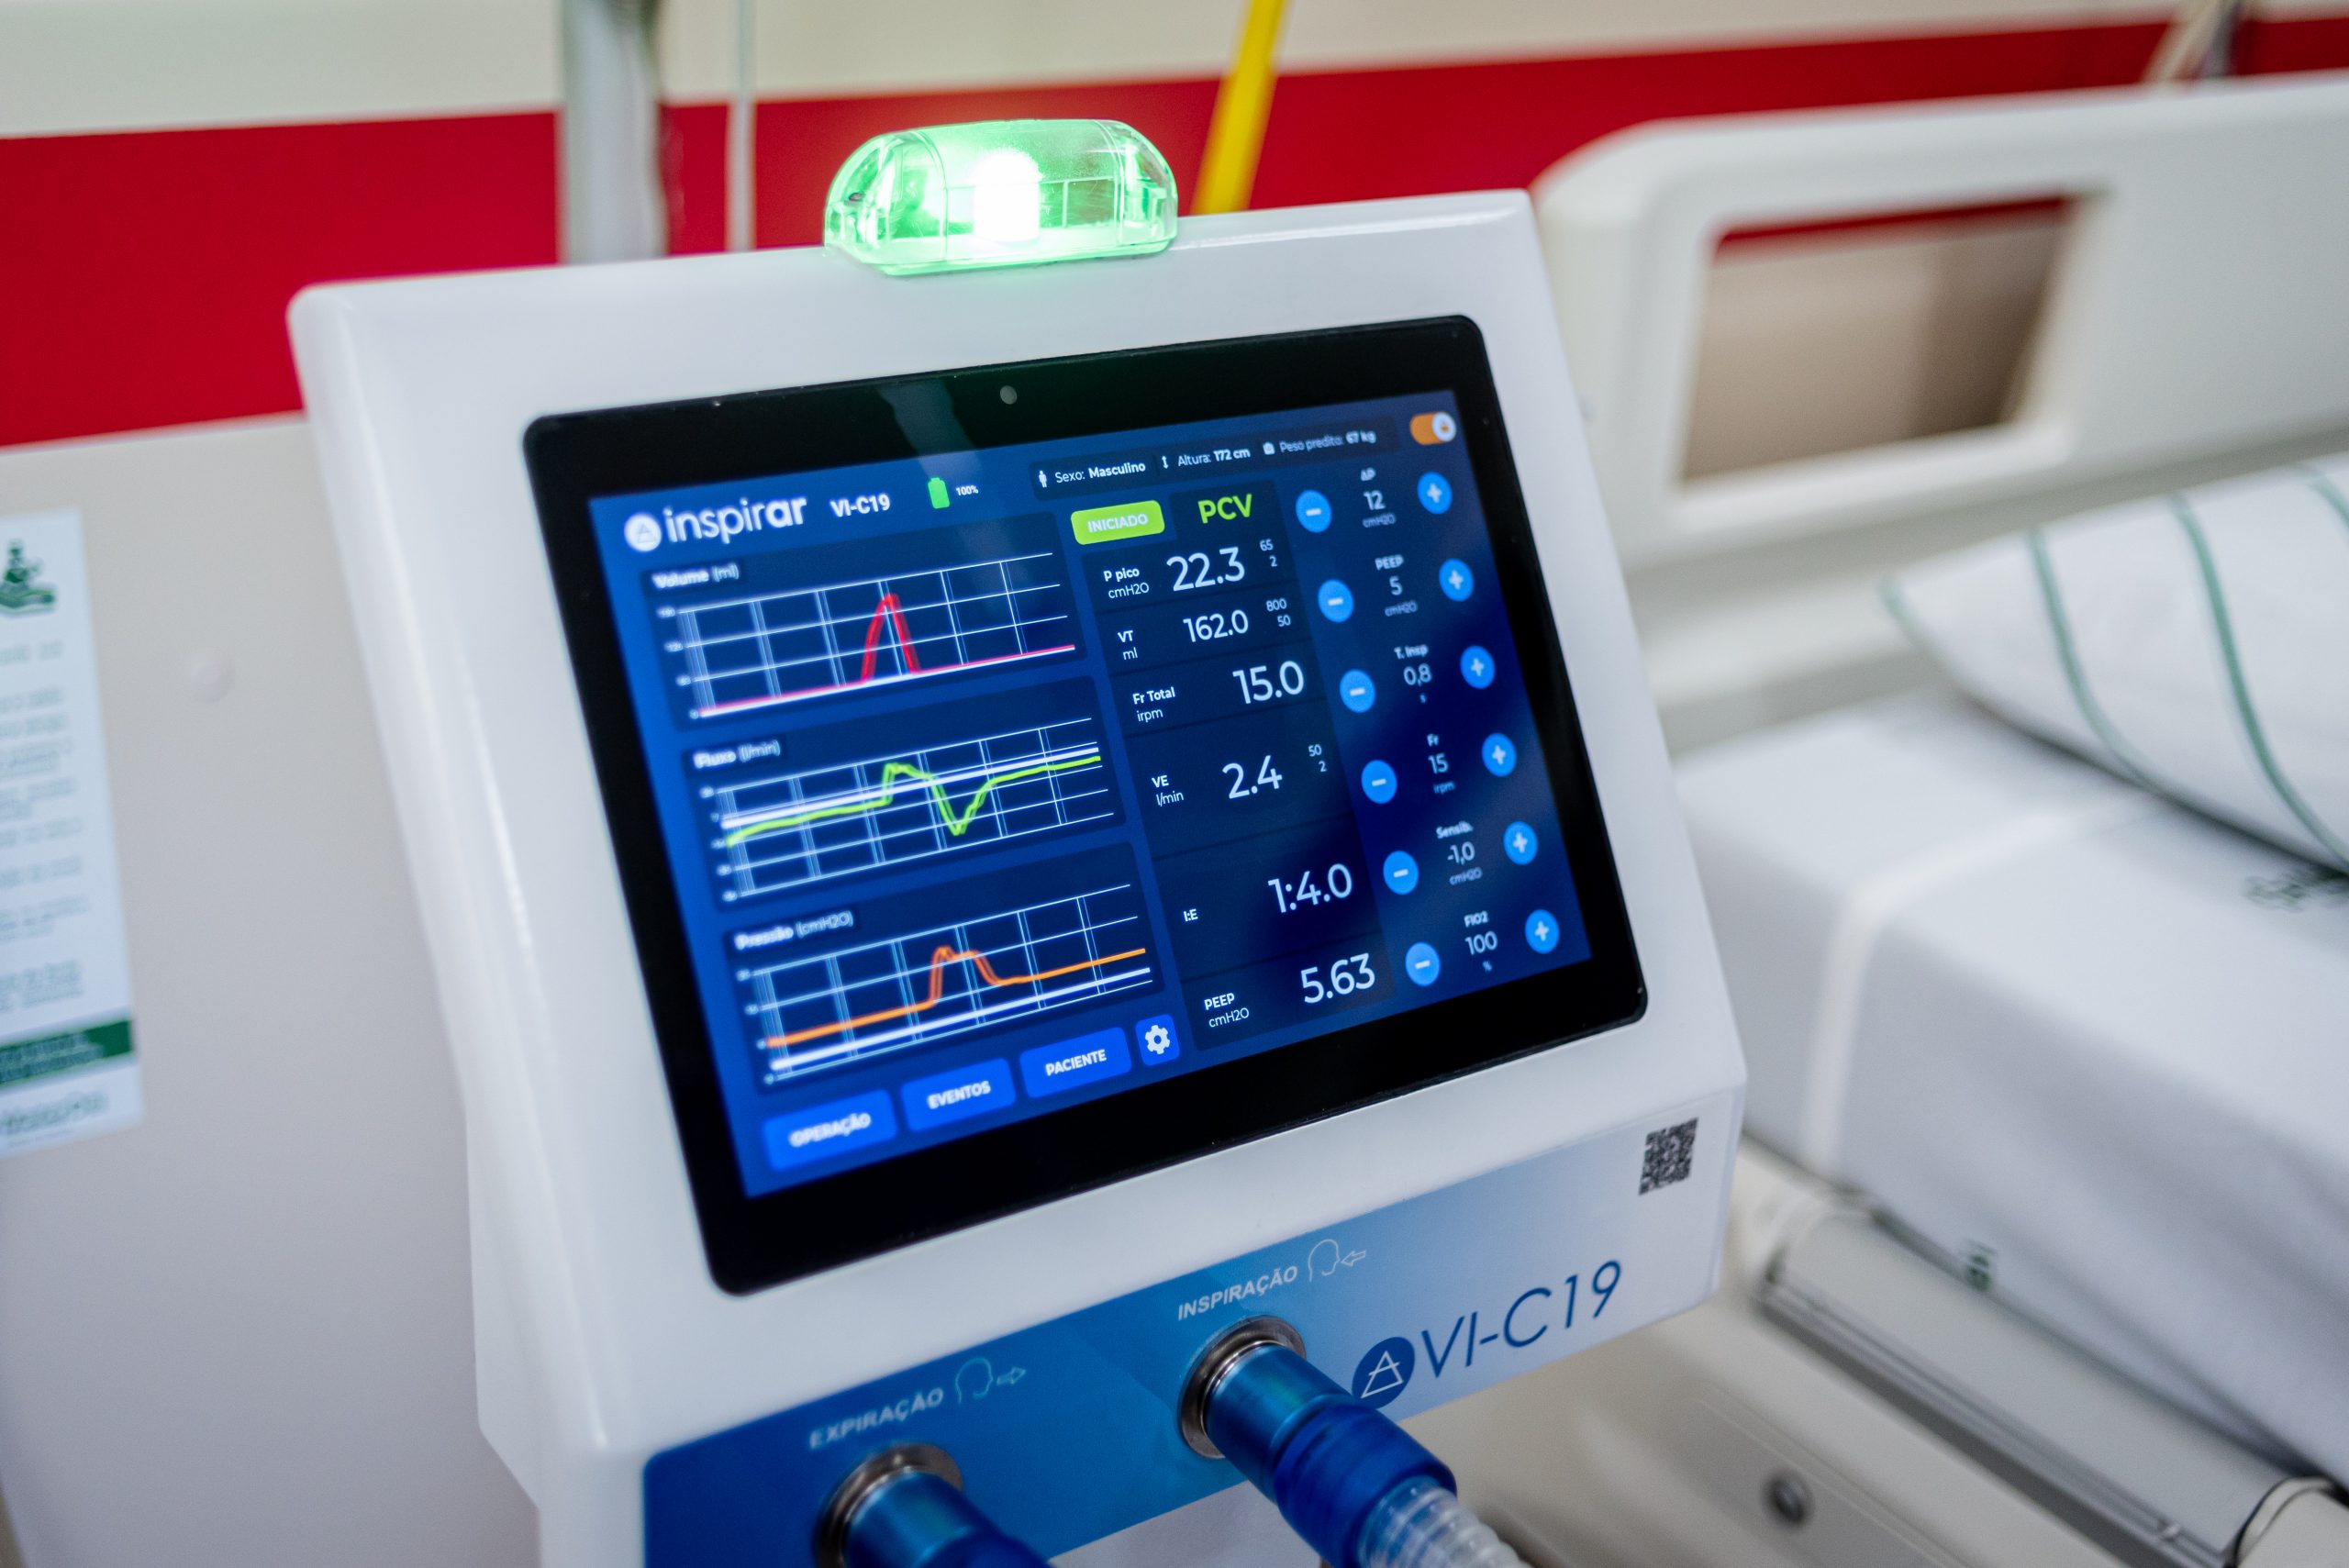 Ventilador pulmonar desenvolvido pelo projeto Inspirar é utilizado em paciente com insuficiência respiratória